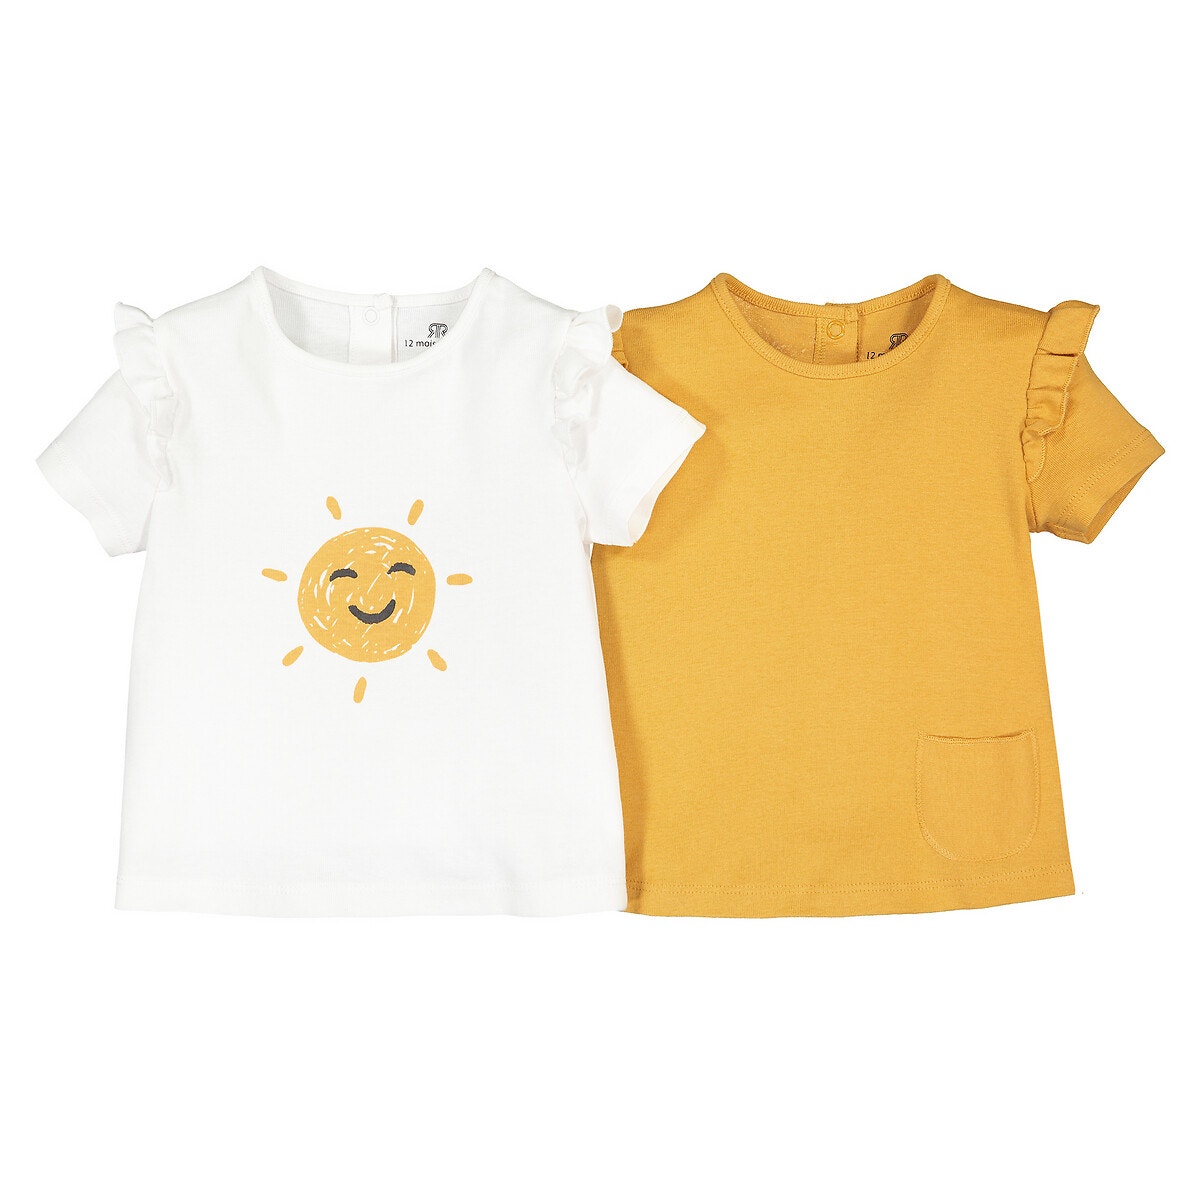 ΠΑΙΔΙ | Βρεφικά | Μπλούζες & Πουκάμισα | T-shirts Σετ 2 κοντομάνικες μπλούζες από βιολογικό με βολάν, 1 μηνός - 2 ετών